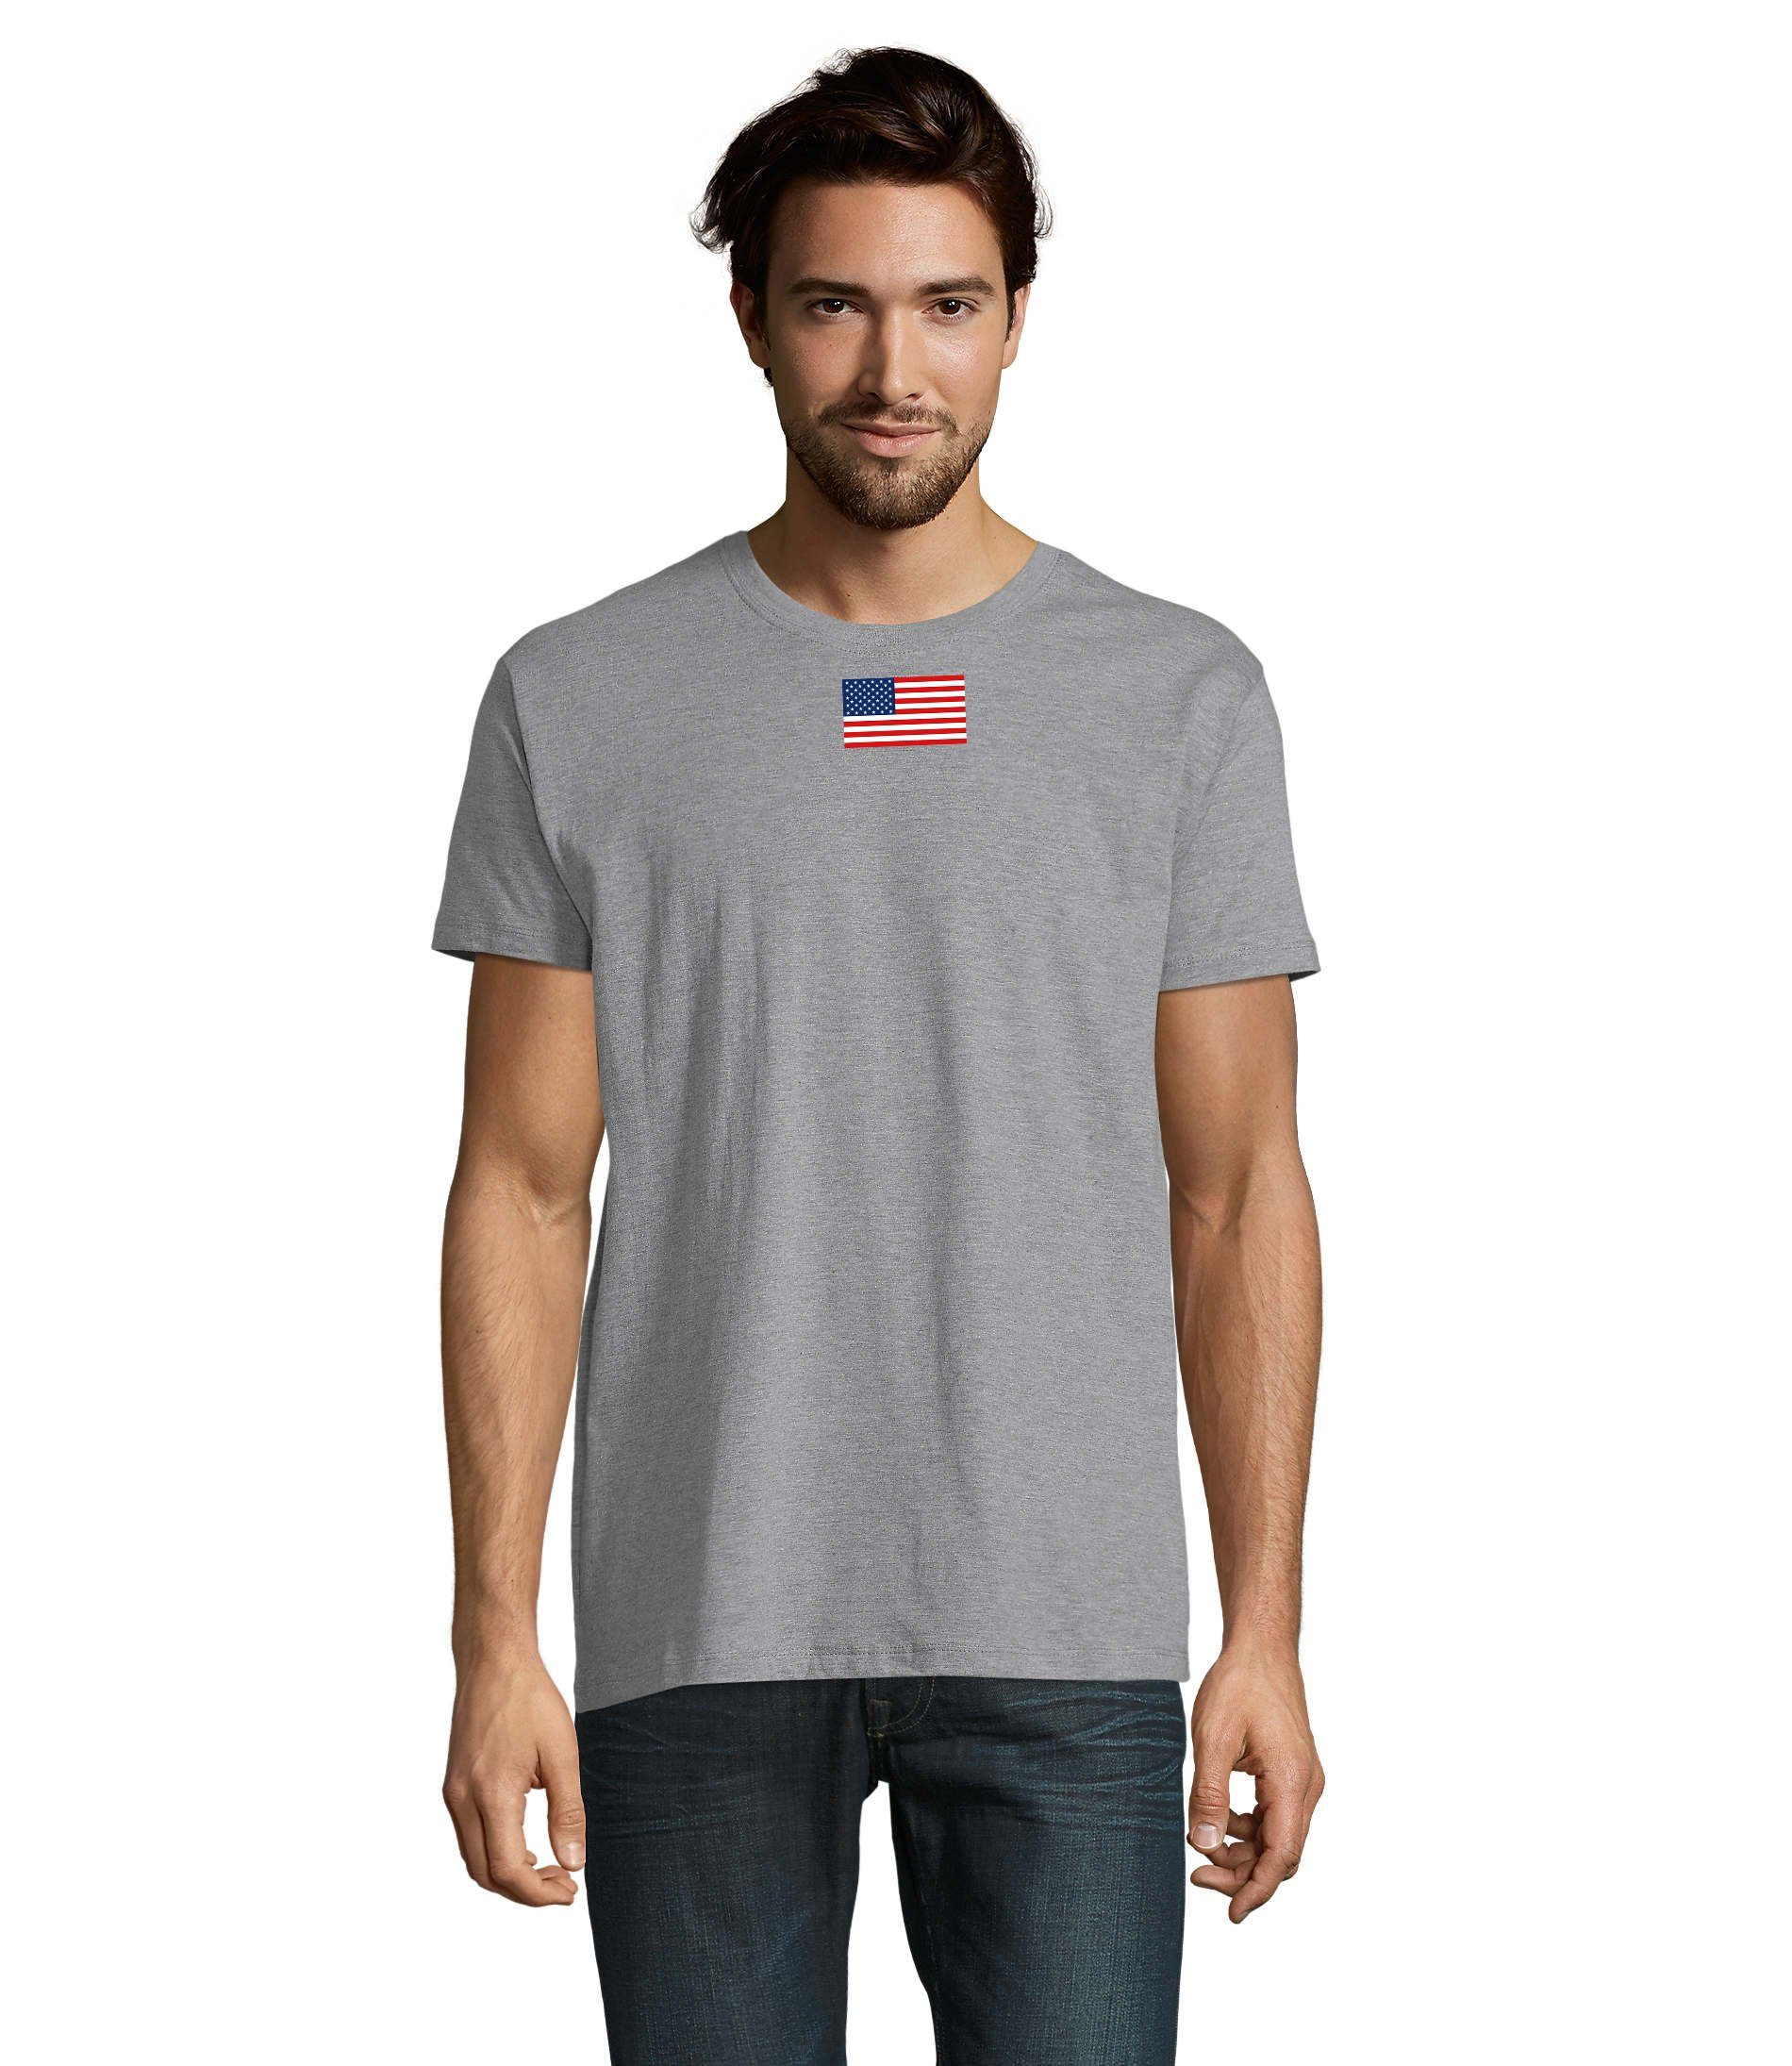 Air Blondie von Staaten Force Amerika T-Shirt & Herren Brownie Army Grau Nartion Vereinigte USA